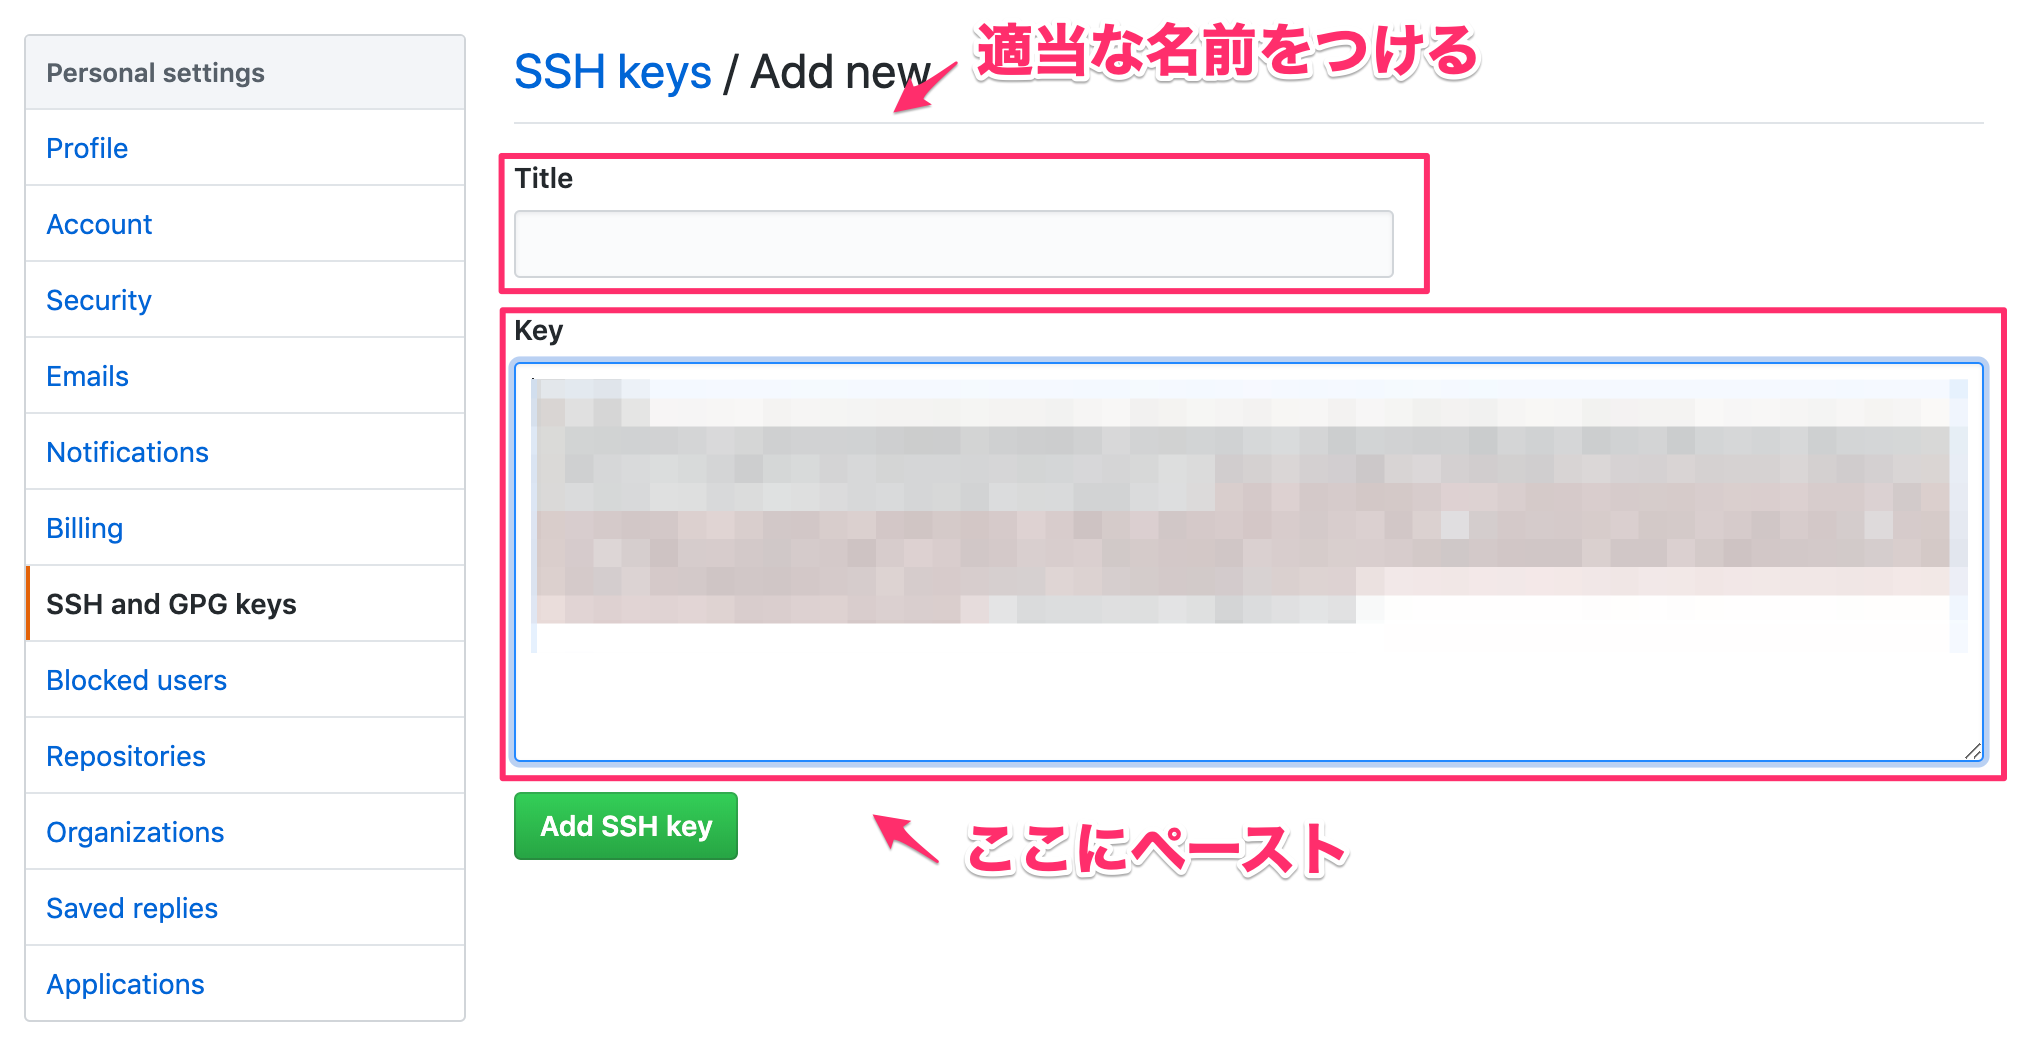 Add_new_SSH_keys.png